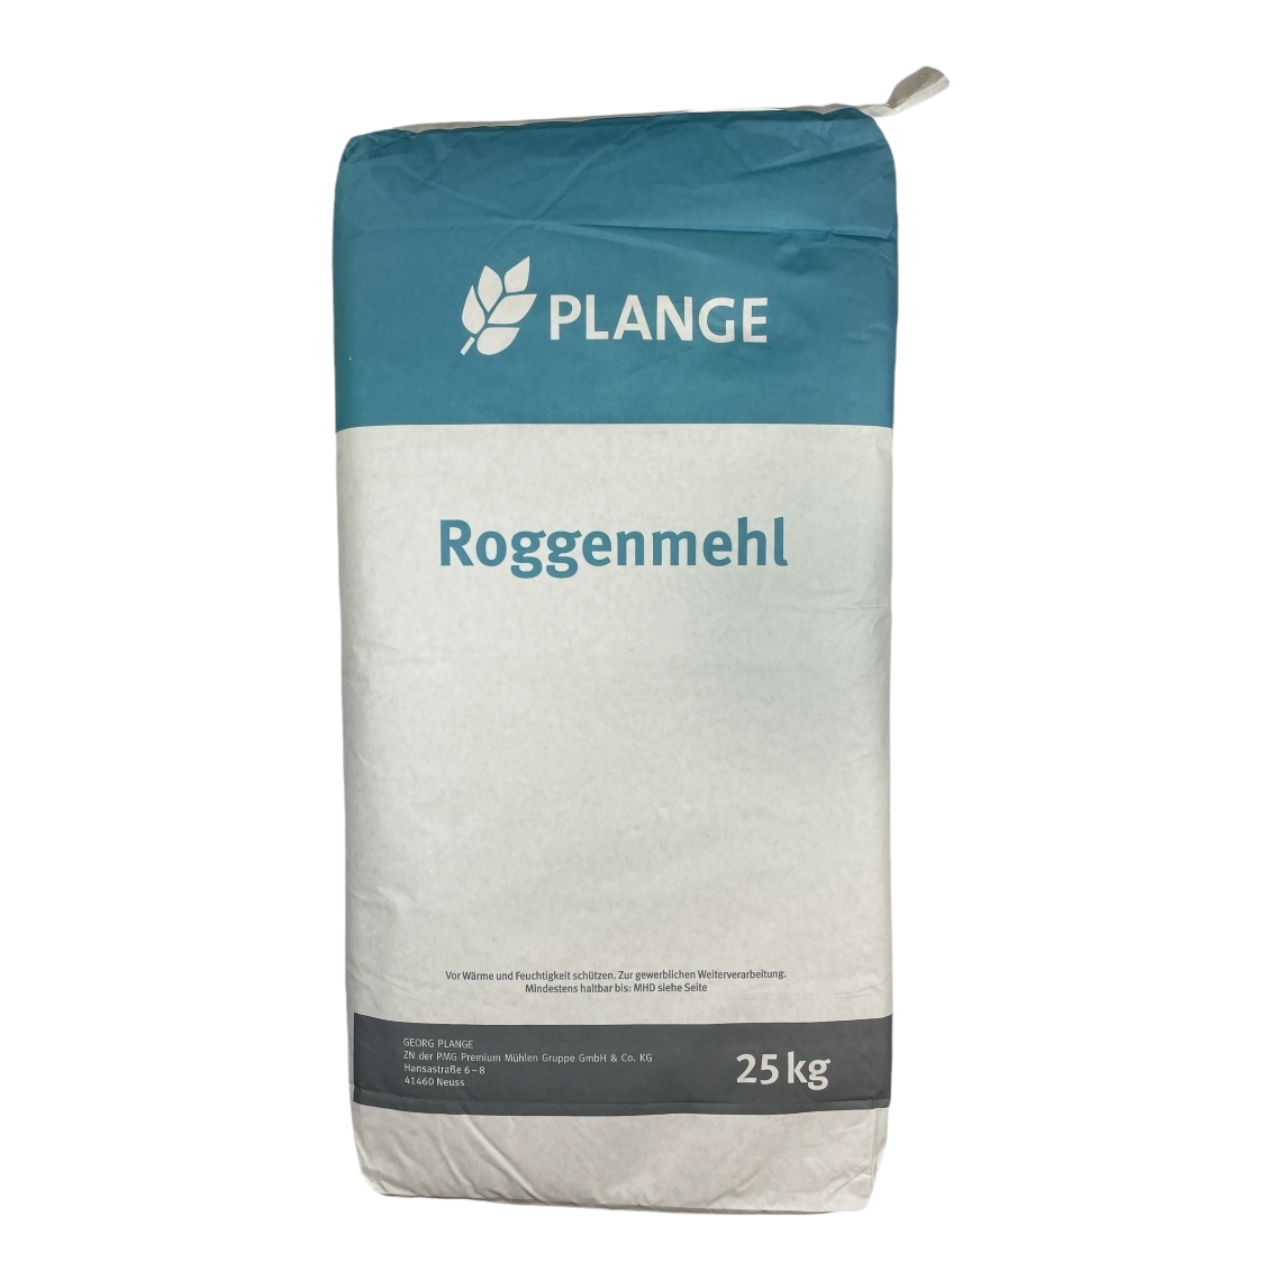 Roggenmehl Plange 997 - 25 Kg